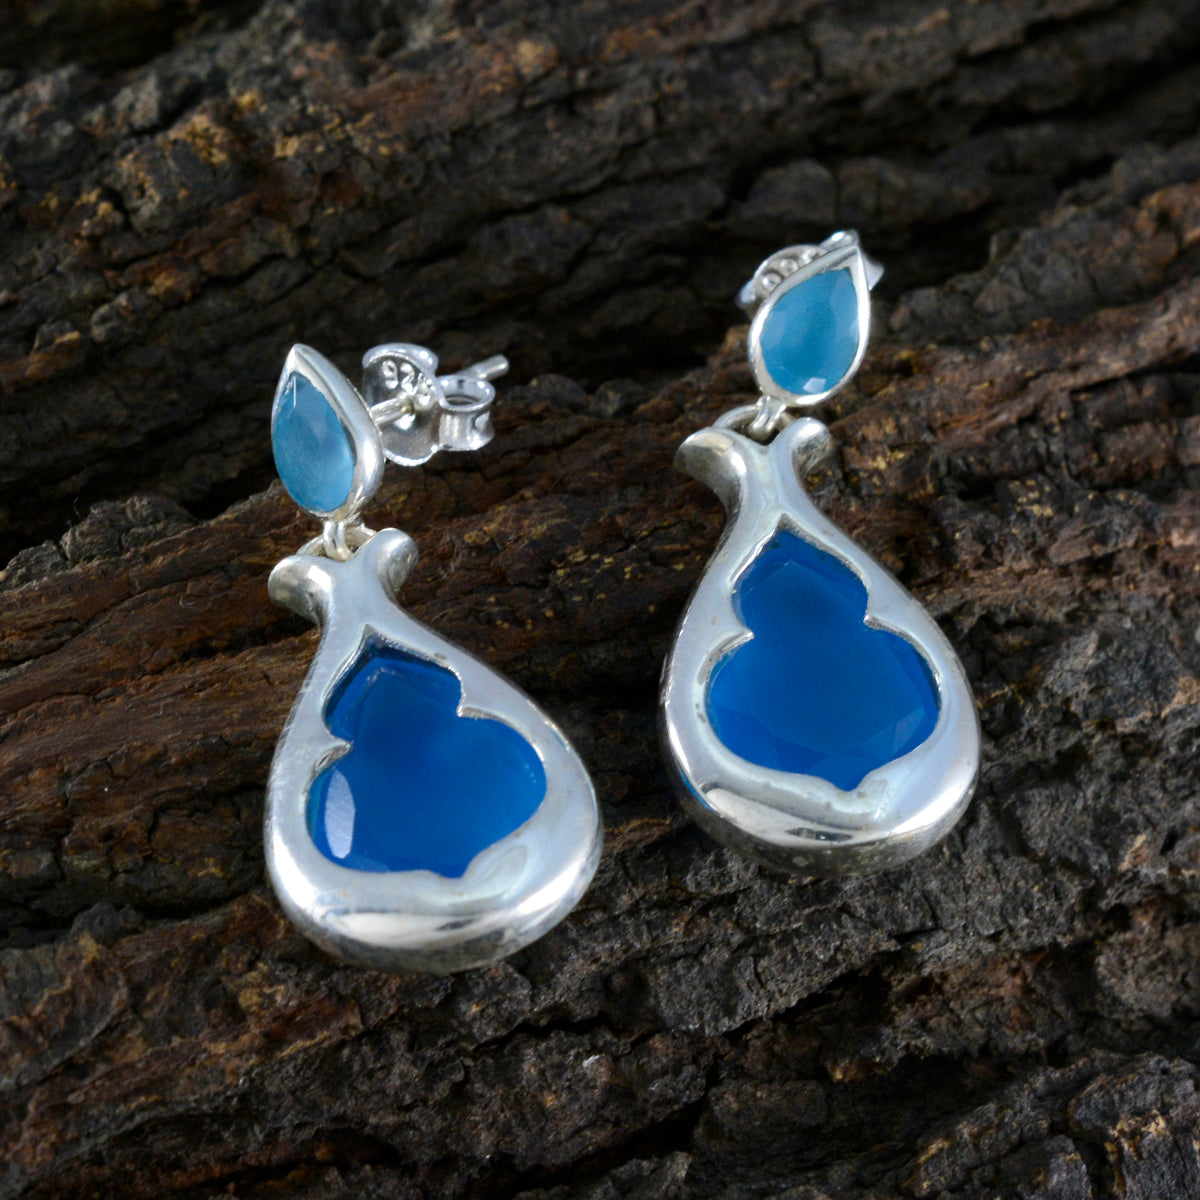 riyo drop-dead splendido orecchino in argento sterling per demoiselle orecchino di calcedonio blu con castone orecchino blu orecchino a perno